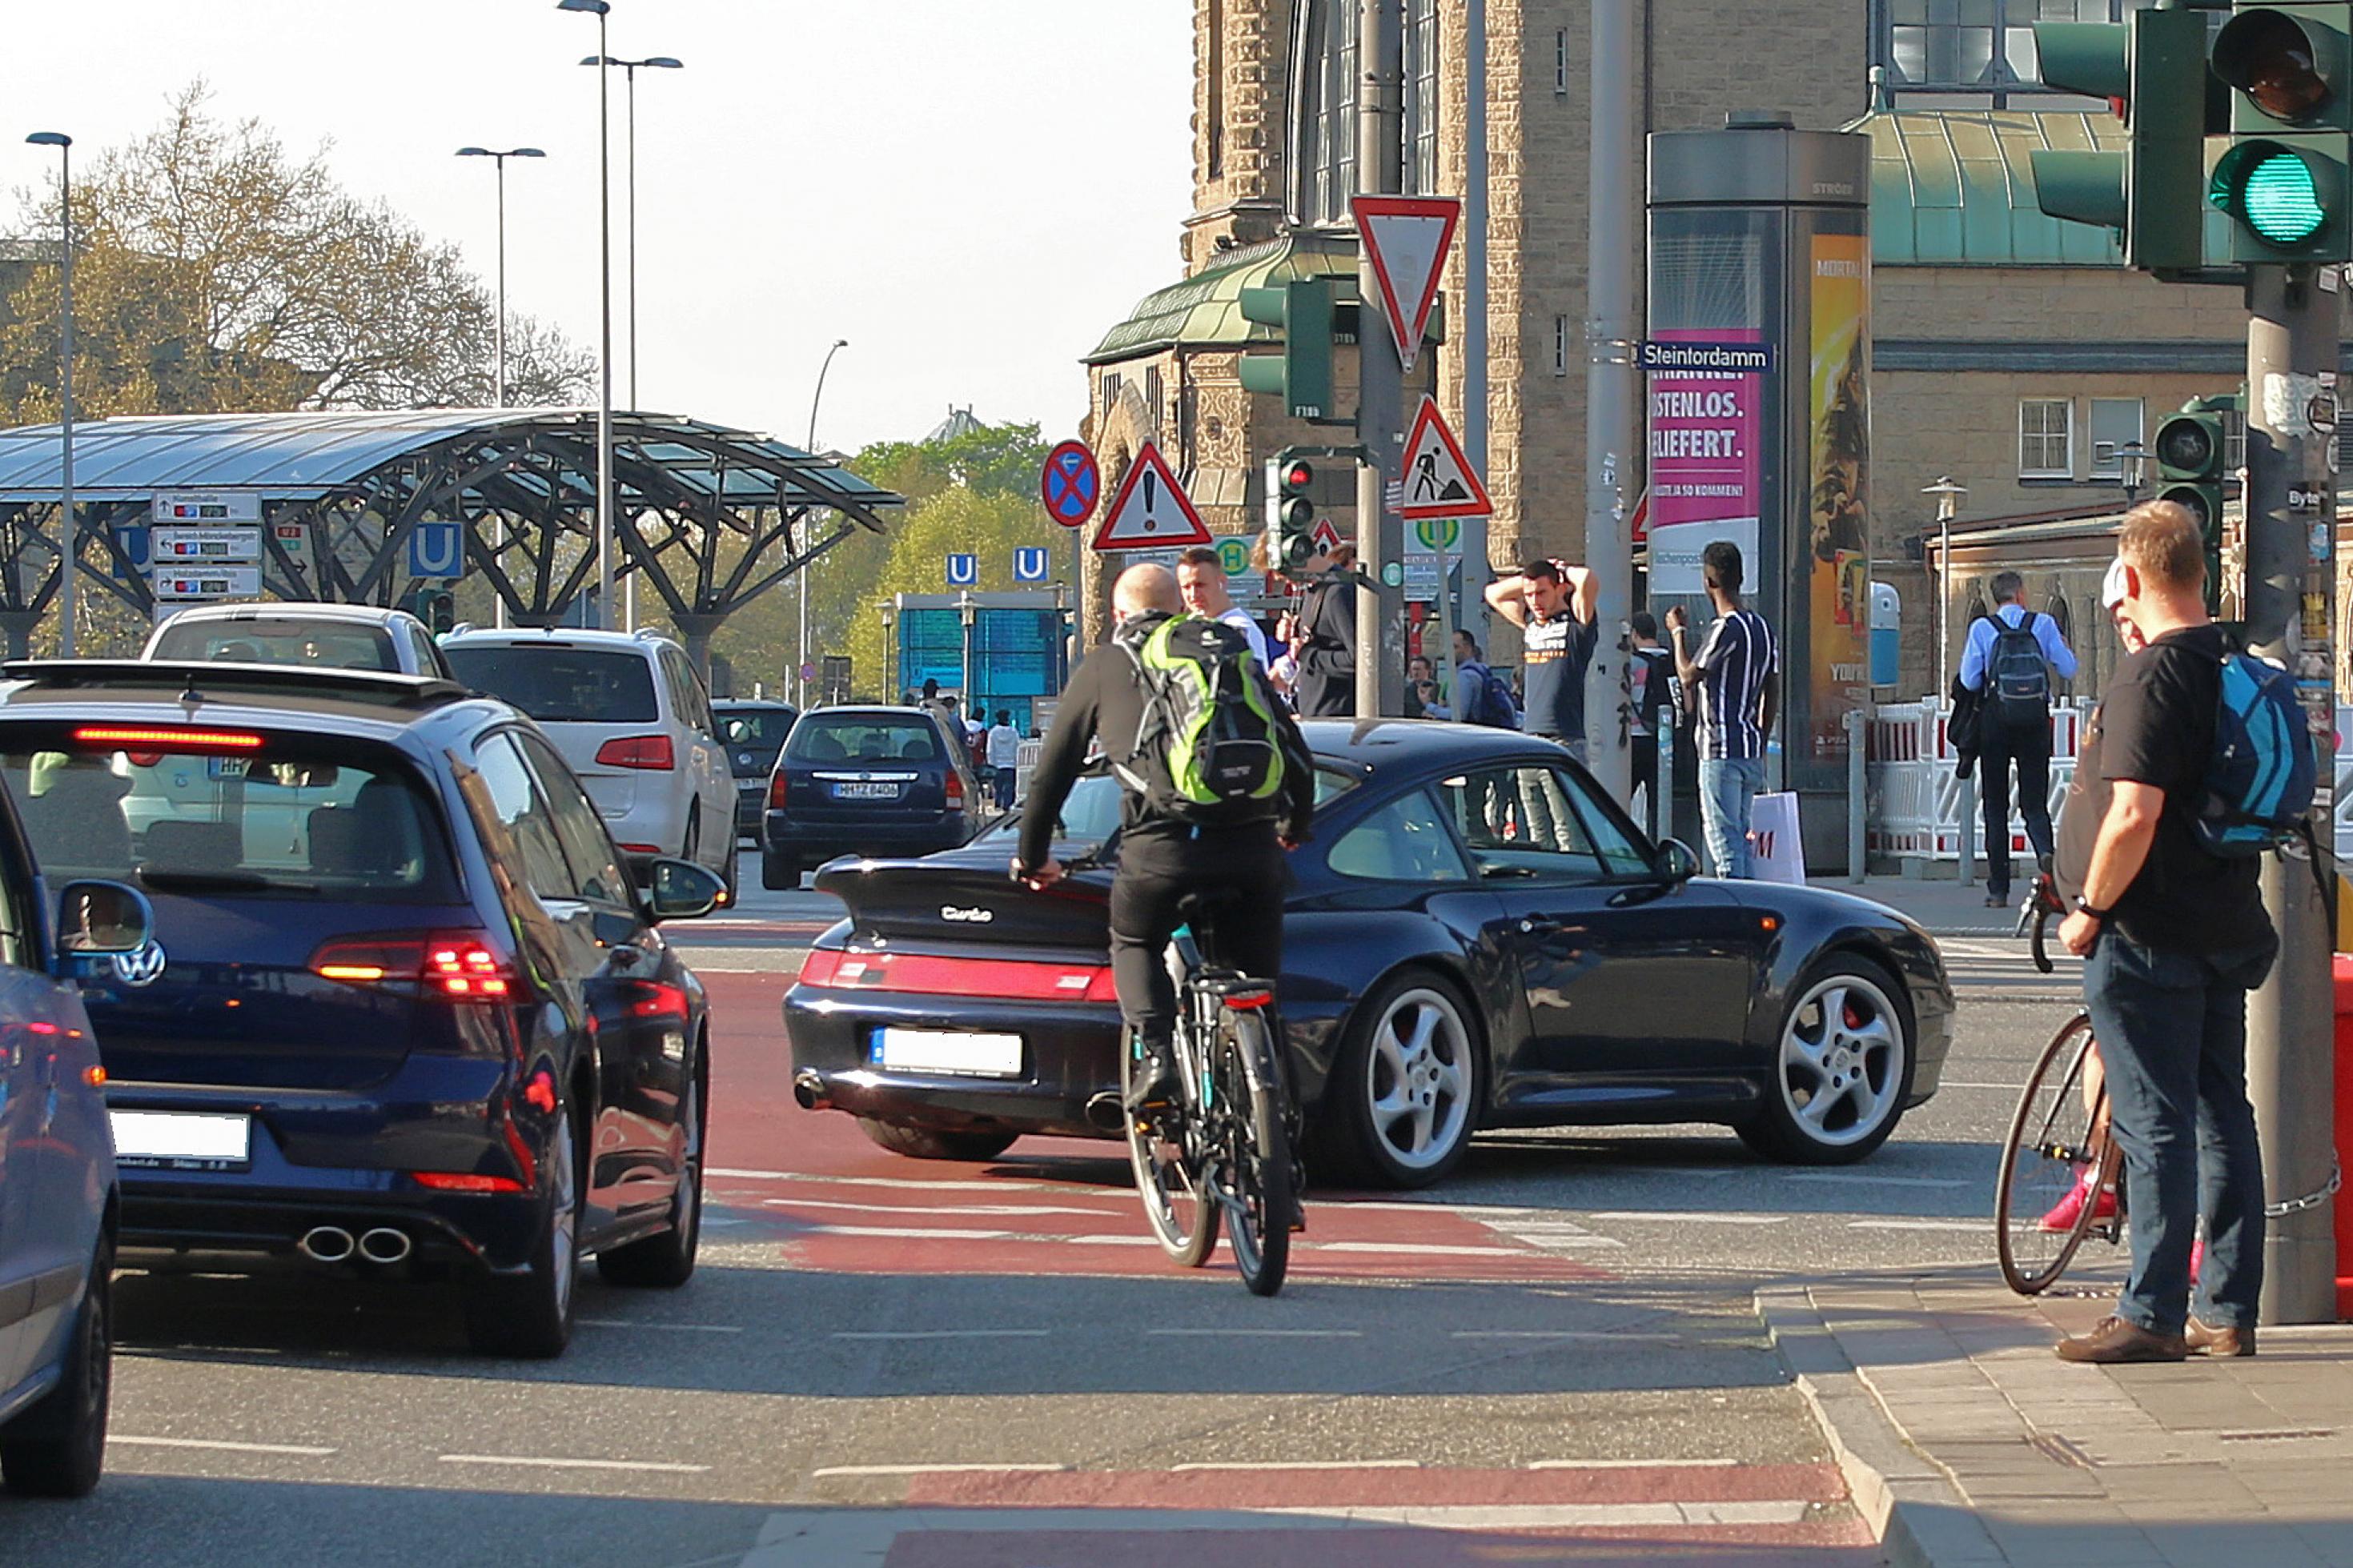 Vor dem Hauptbahnhof: Ein schwarzer Sportwagen steht quer auf dem rot markierten Fahrradweg, ein Mann auf seinem Fahrrad schlängelt sich zwischen Heck des Autos und dem nächsten Wagen in der Schlag vorbei. Straßenszenen in Hamburg: Weil der Porsche beim Rechtsabbiegen den Radweg blockiert, muss der Radfahrer zwischen den Autos Slalom fahren …